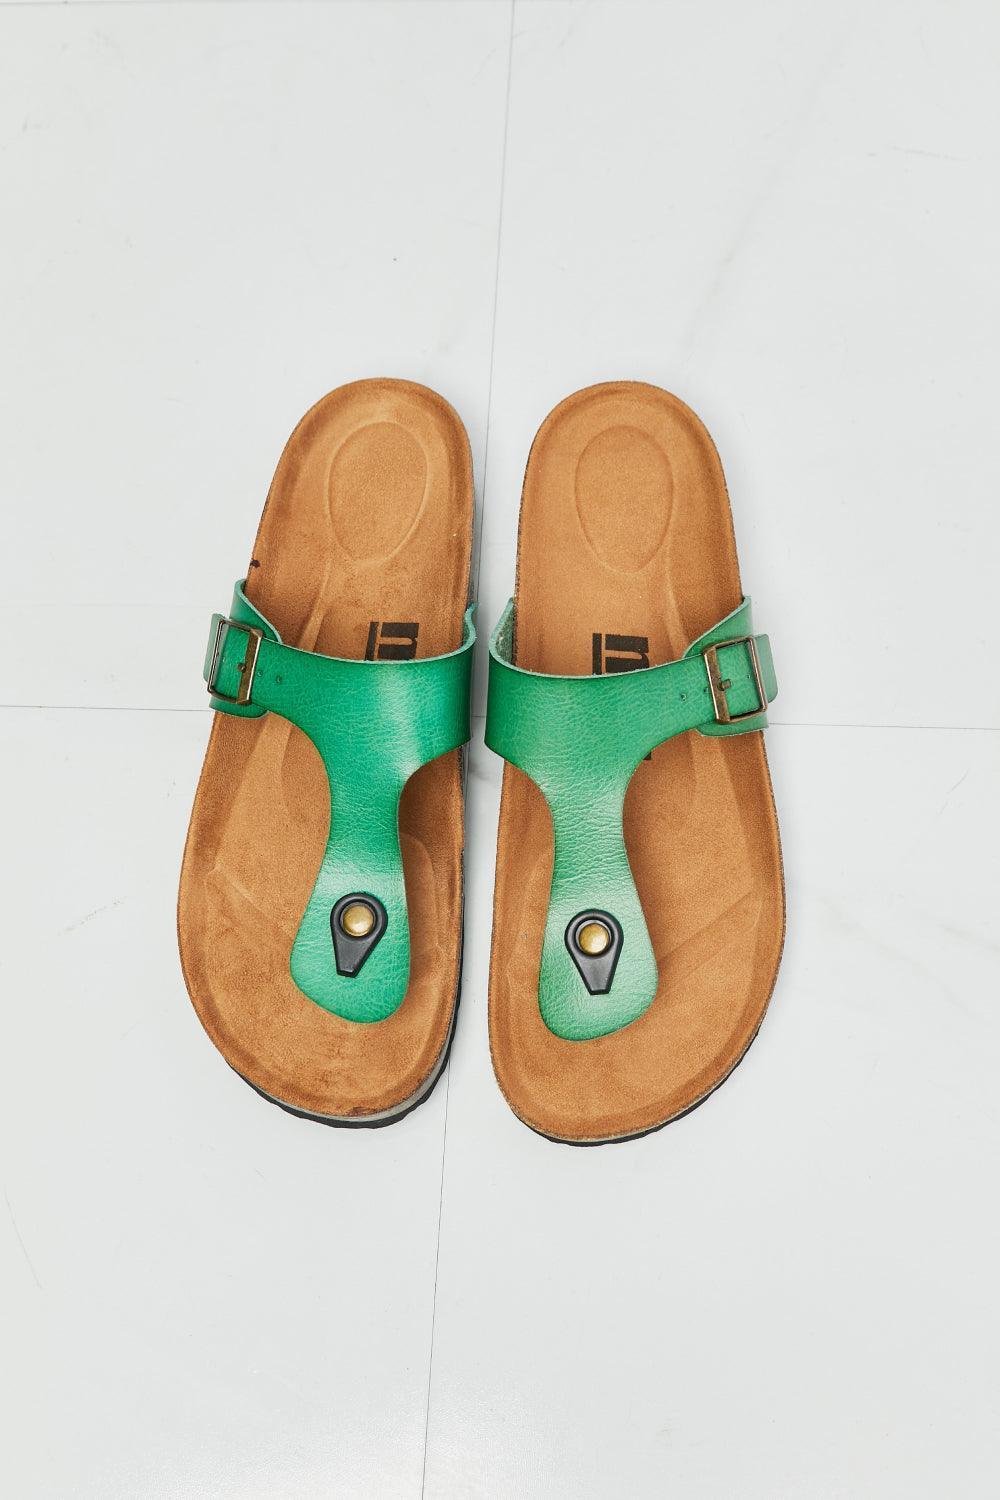 MMShoes Comfortable T-Strap Green Flip Flops - MXSTUDIO.COM